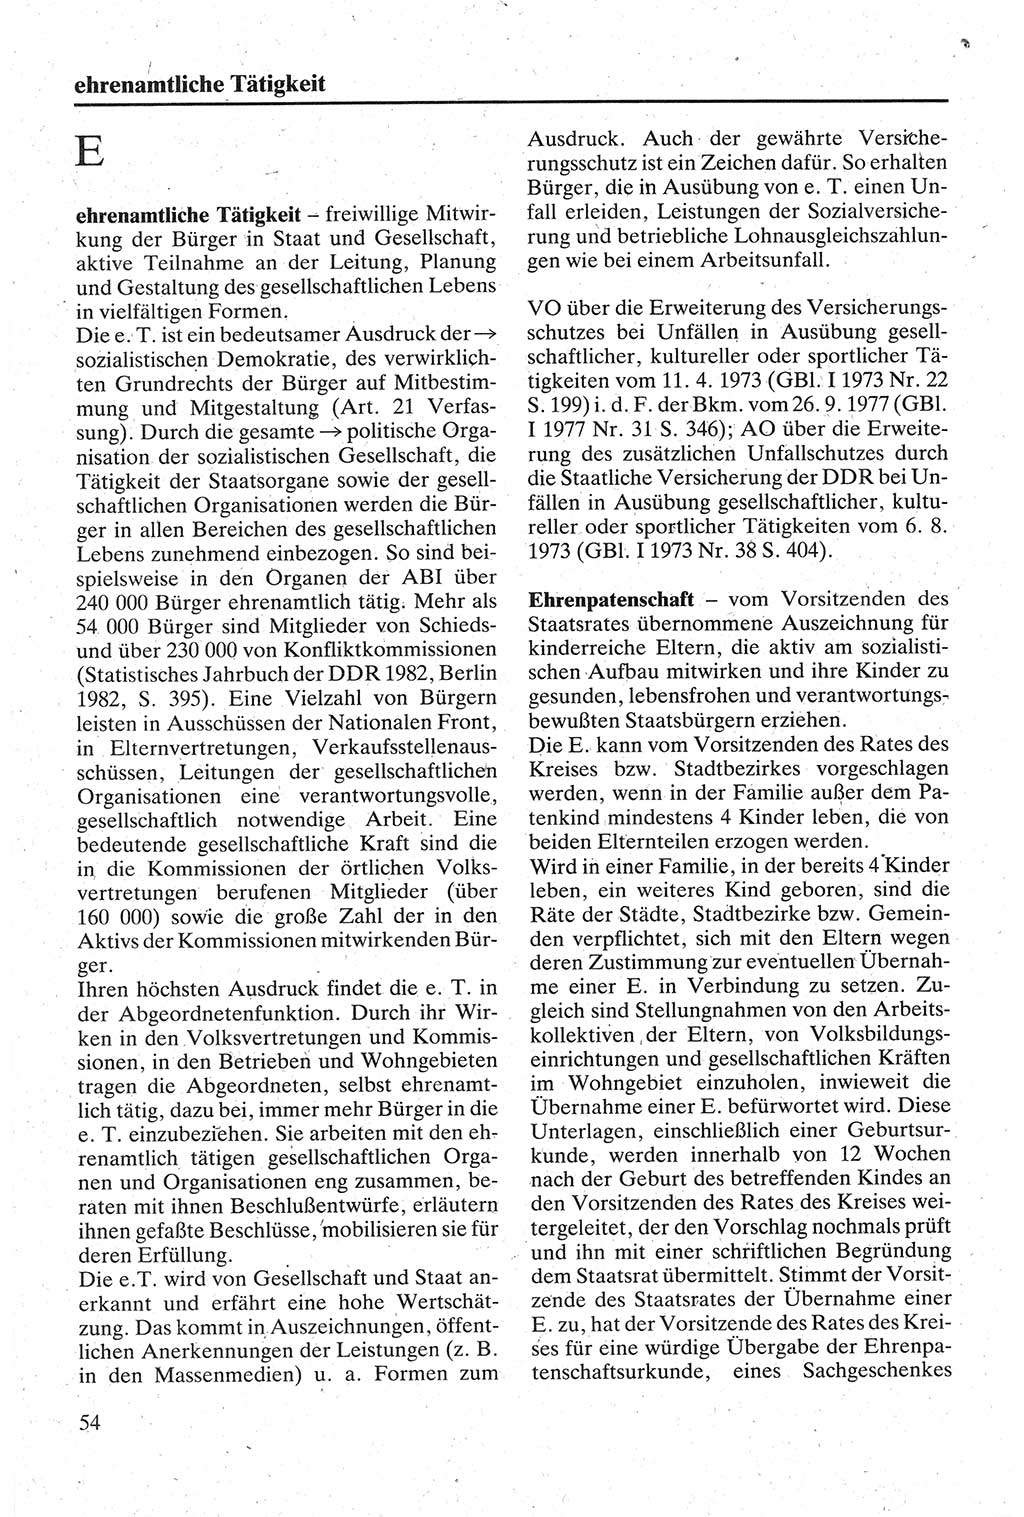 Handbuch für den Abgeordneten [Deutsche Demokratische Republik (DDR)] 1984, Seite 54 (Hb. Abg. DDR 1984, S. 54)